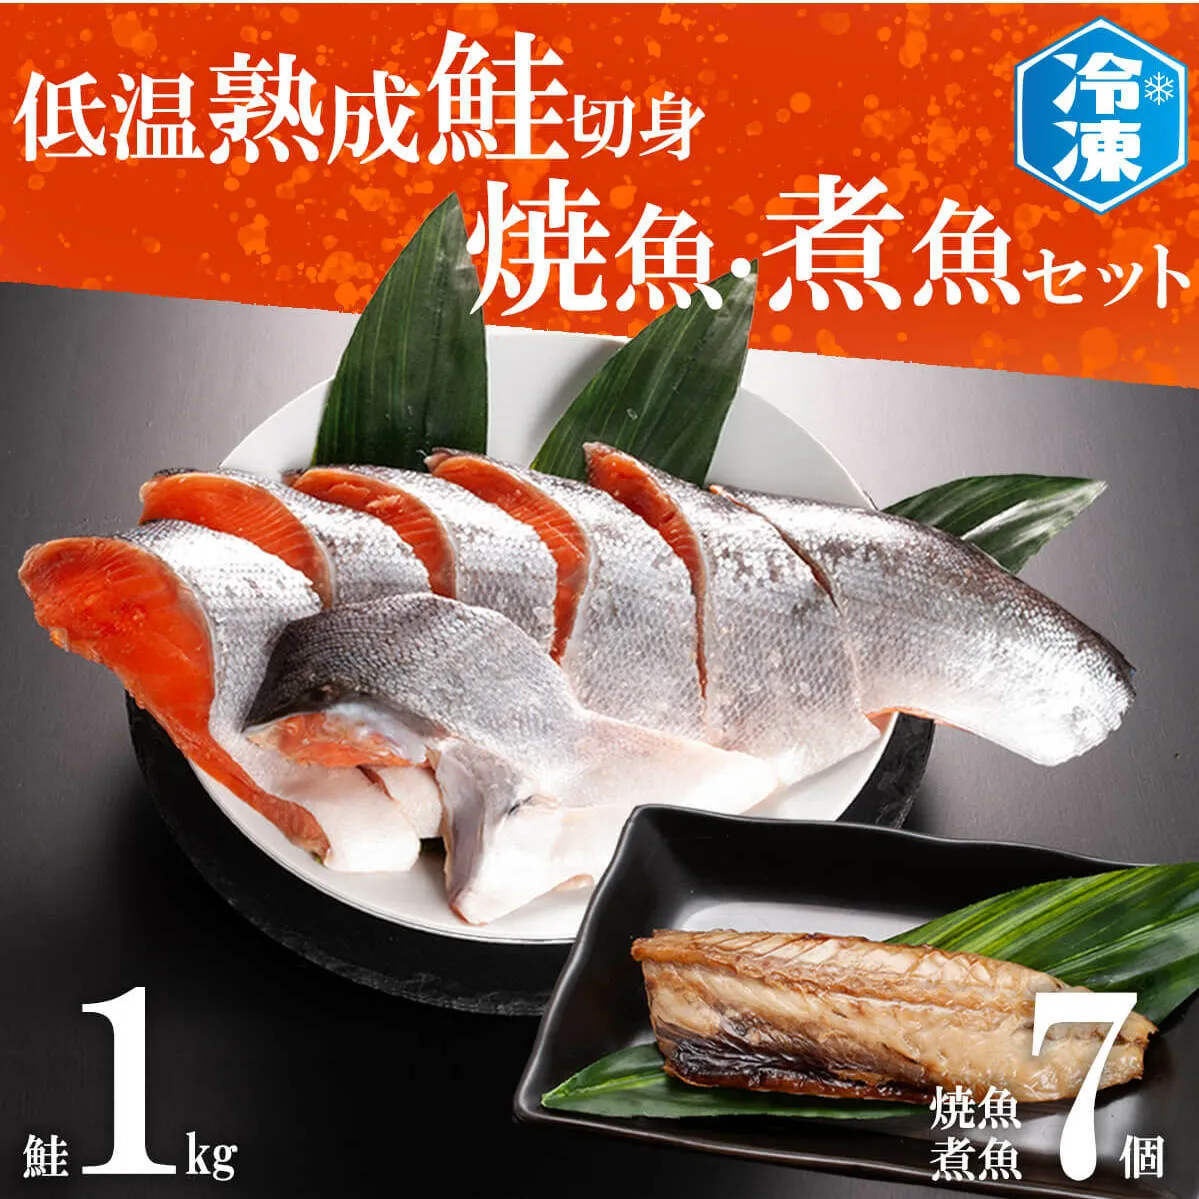 低温熟成鮭切身 1kg 焼魚 煮魚 7パックセット 切り身 ほっけ さば 赤魚 いわし 冷凍 魚 さかな 鮭 切身